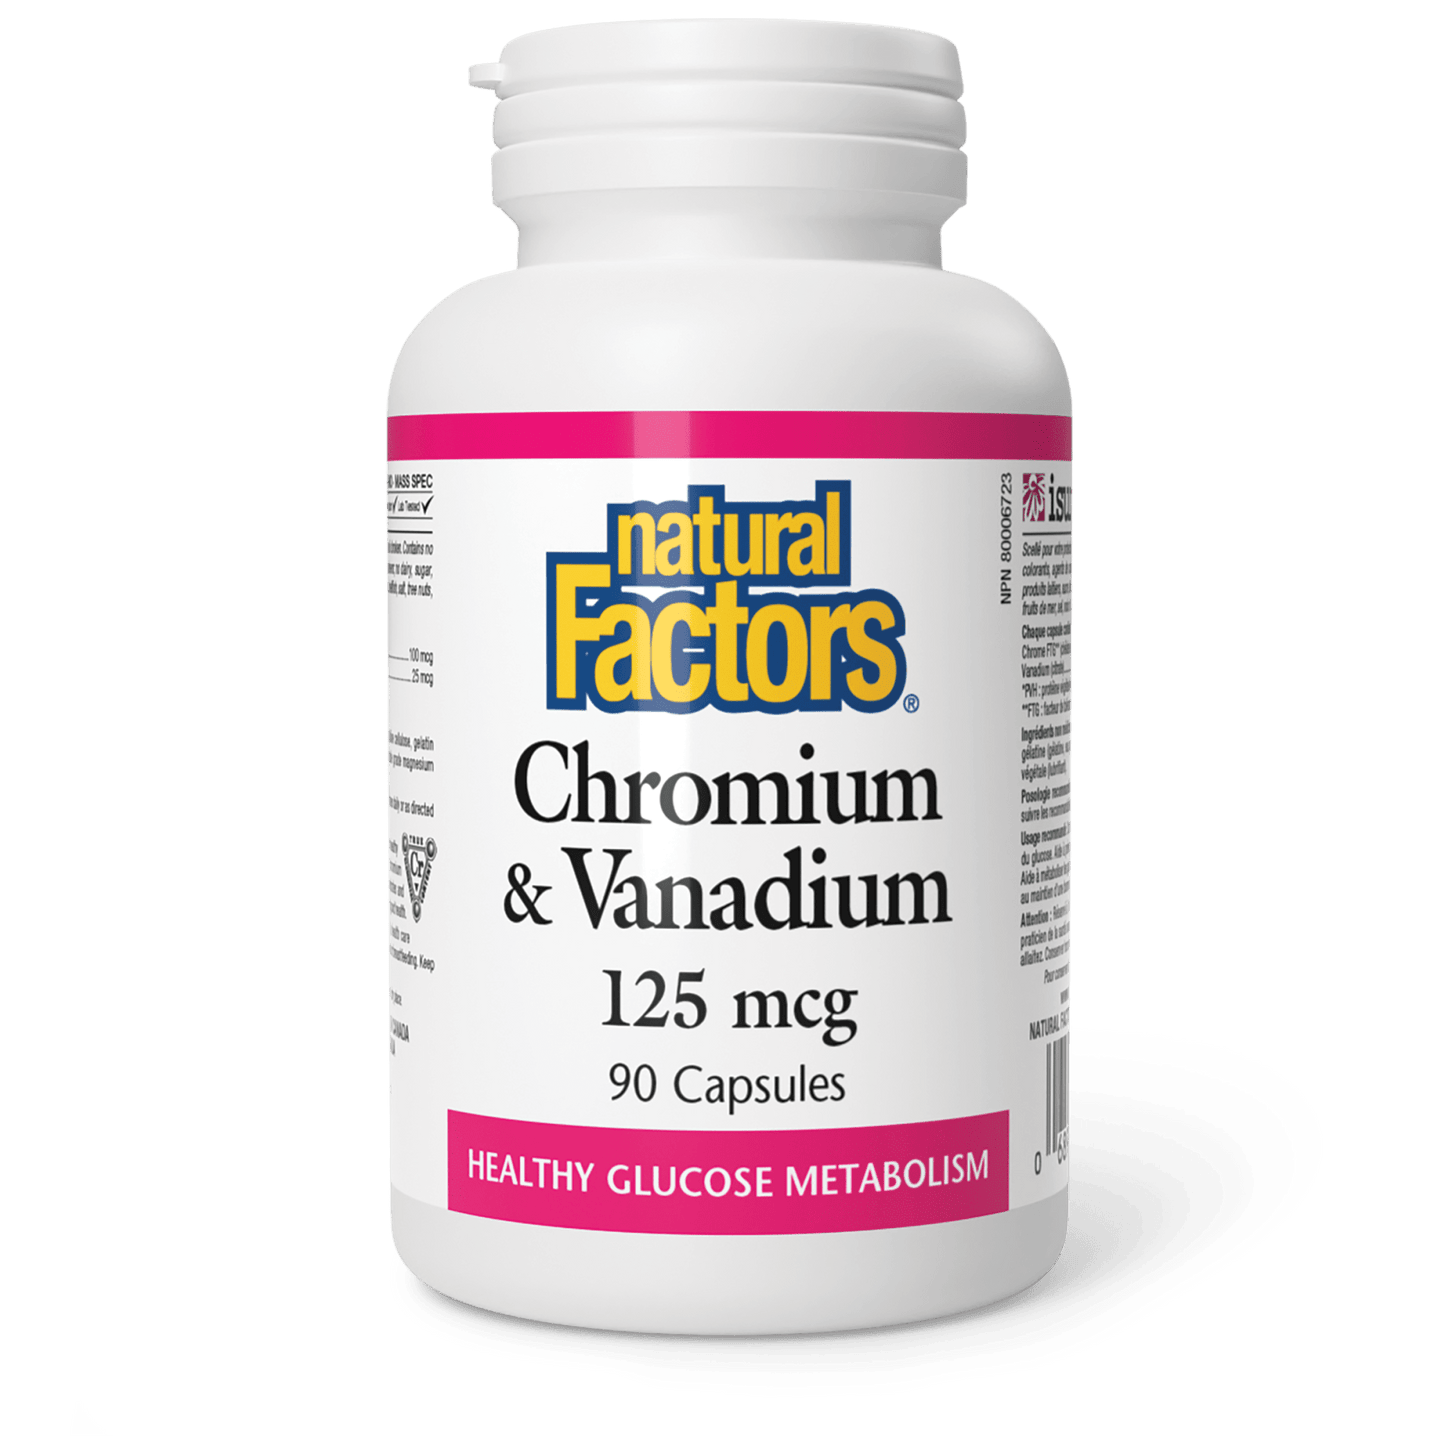 Chromium & Vanadium 125 mcg, Natural Factors|v|image|1635